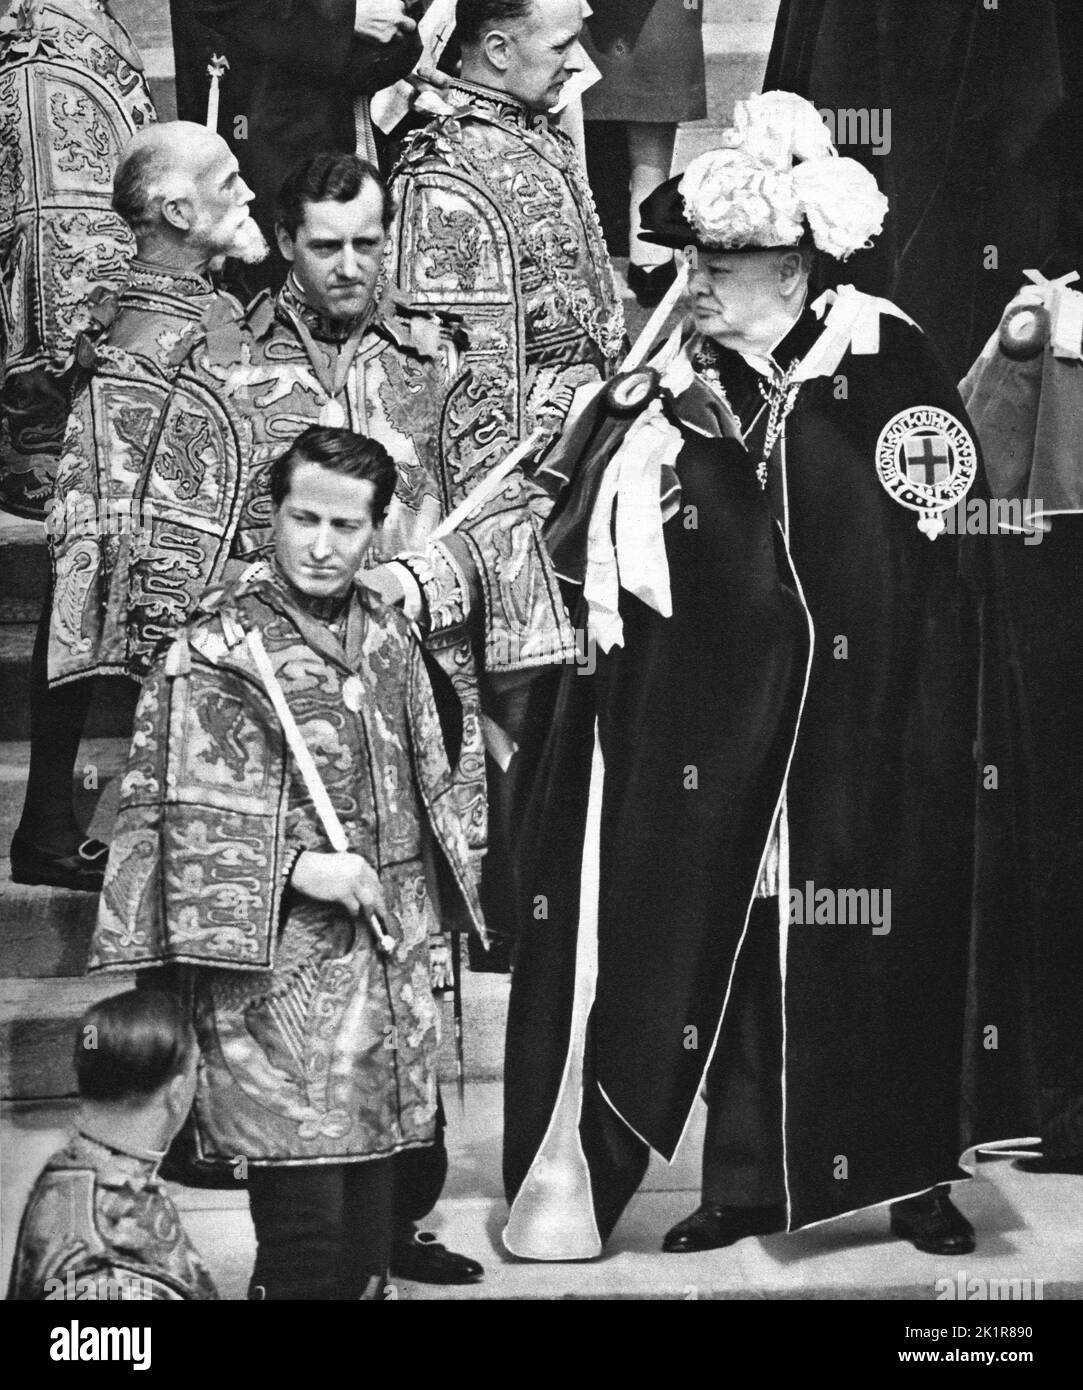 Winston Churchill verließ die St. George's Chapel, Windsor, nach der Zeremonie, in der er die Ritterschaft des Gewanters erhielt. April 1953 Stockfoto